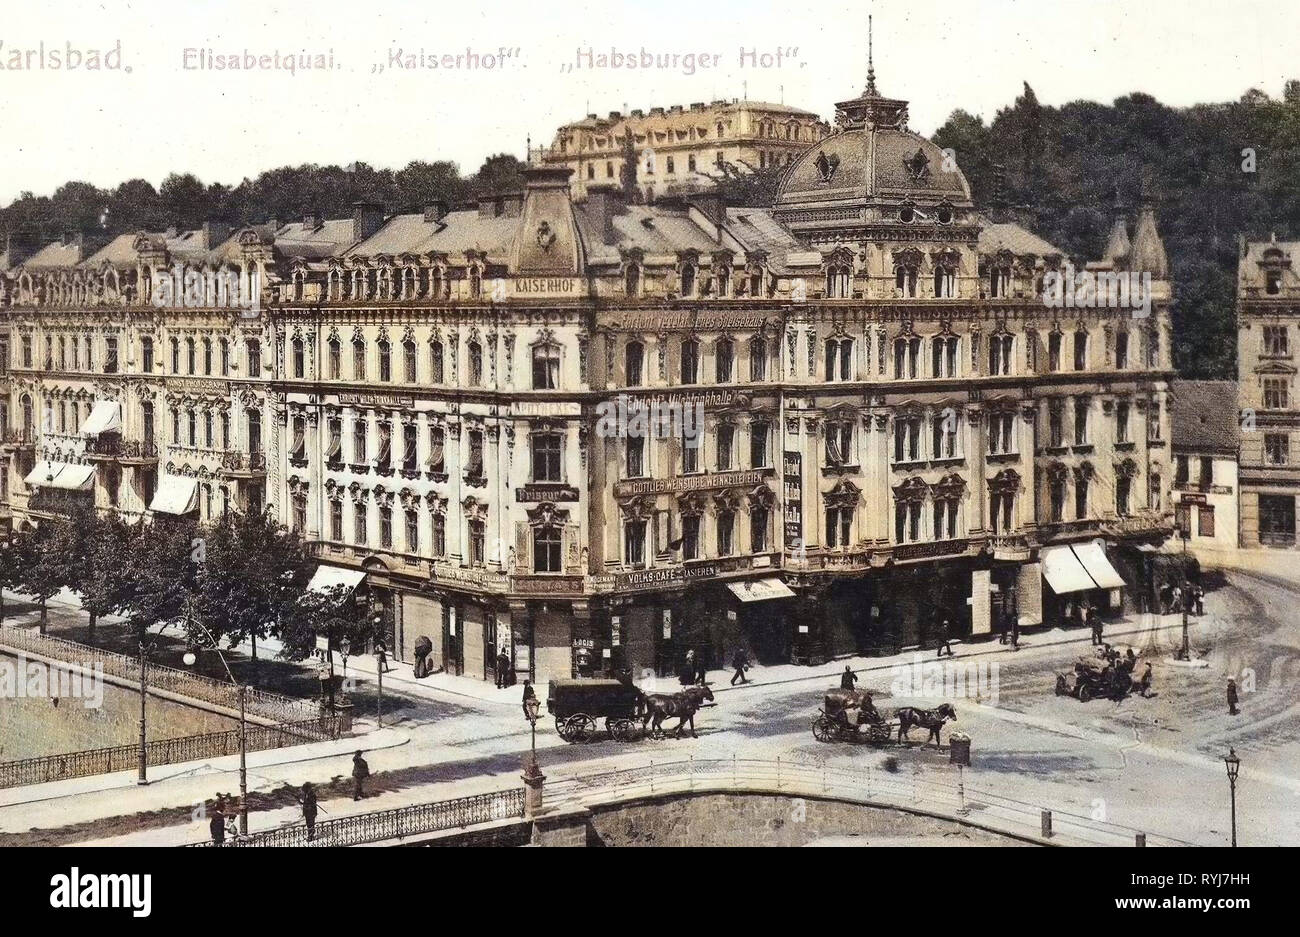 Bâtiments à Karlovy Vary, ponts au-dessus de la Teplá à Karlovy Vary, Karlovy Vary, 1909, Karlsbad, Elisabetquai, Kaiserhof, Habsburger Hof, République Tchèque Banque D'Images